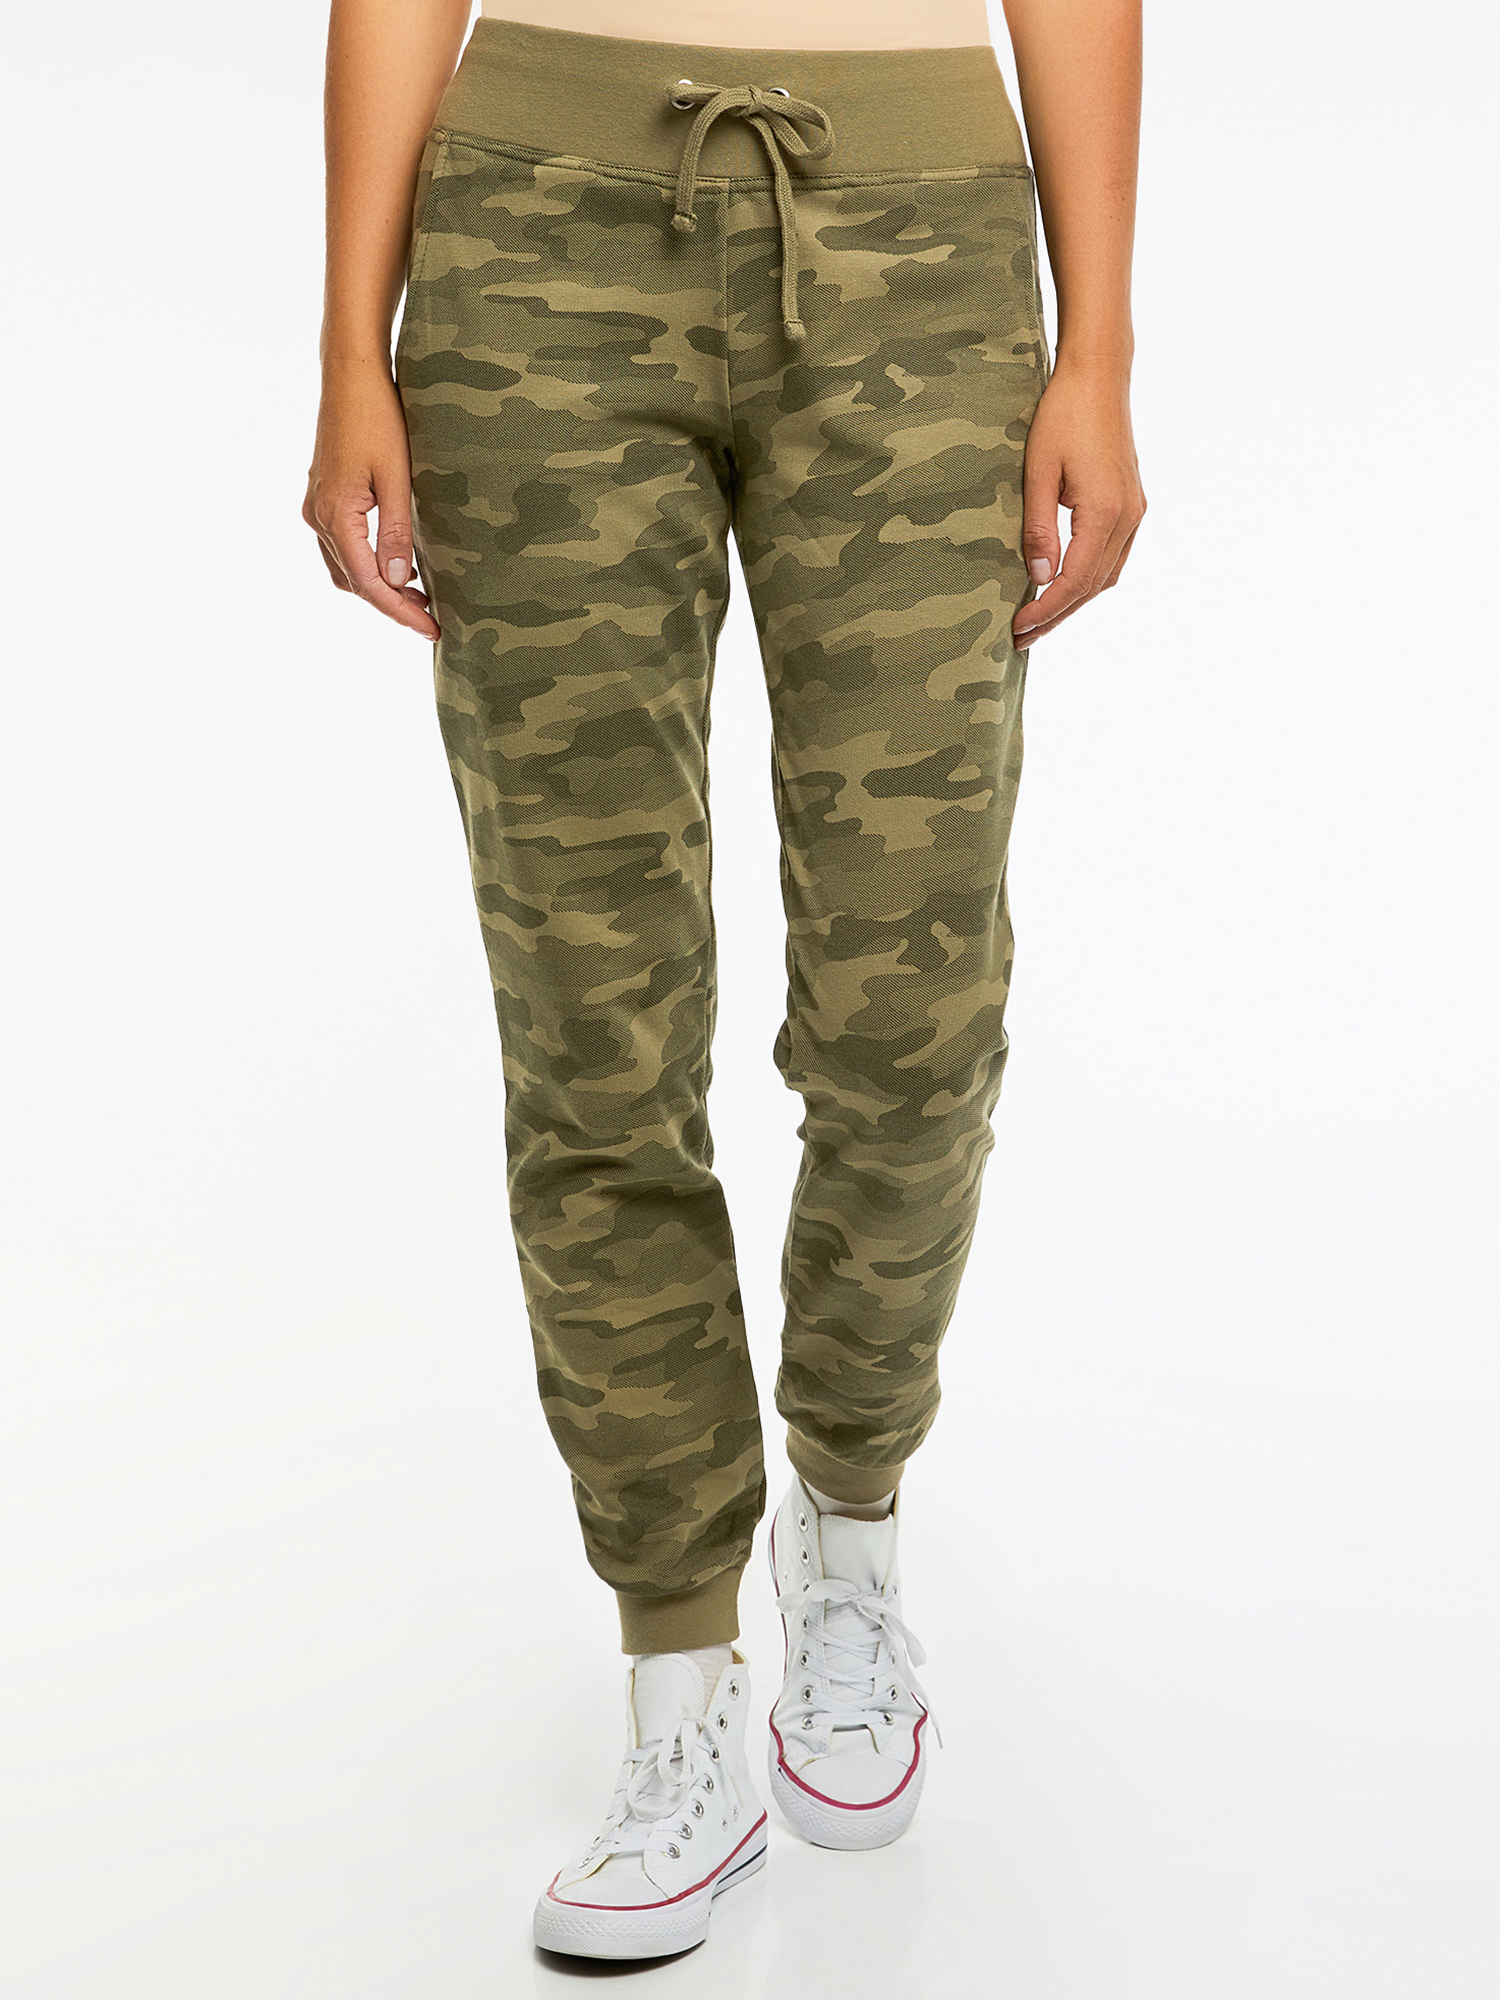 Спортивные брюки женские oodji 16700030-5B зеленые XL